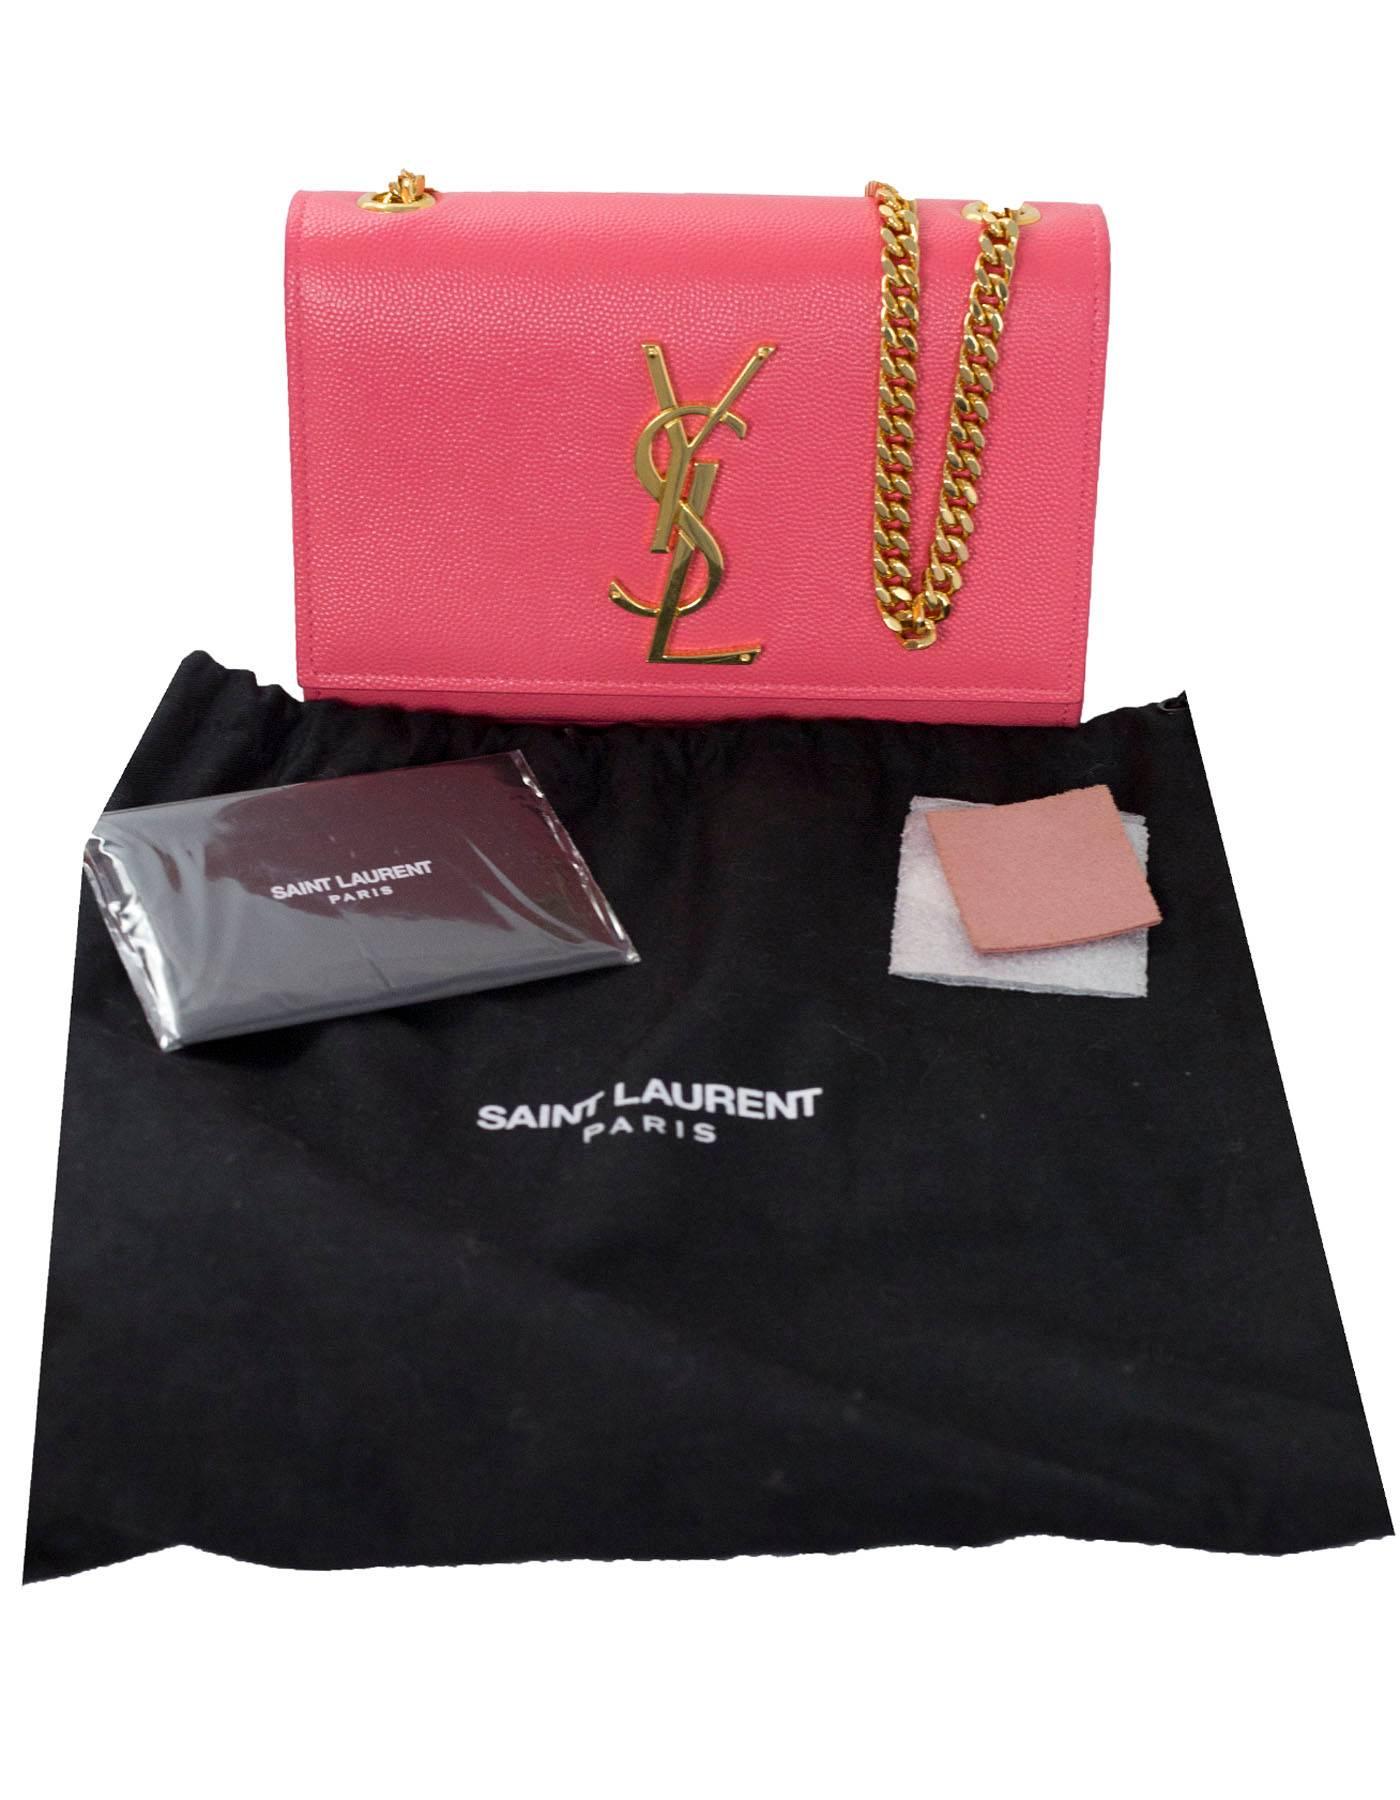 Saint Laurent Pink Grain De Poudre Leather Small Monogram Kate Crossbody Bag 6